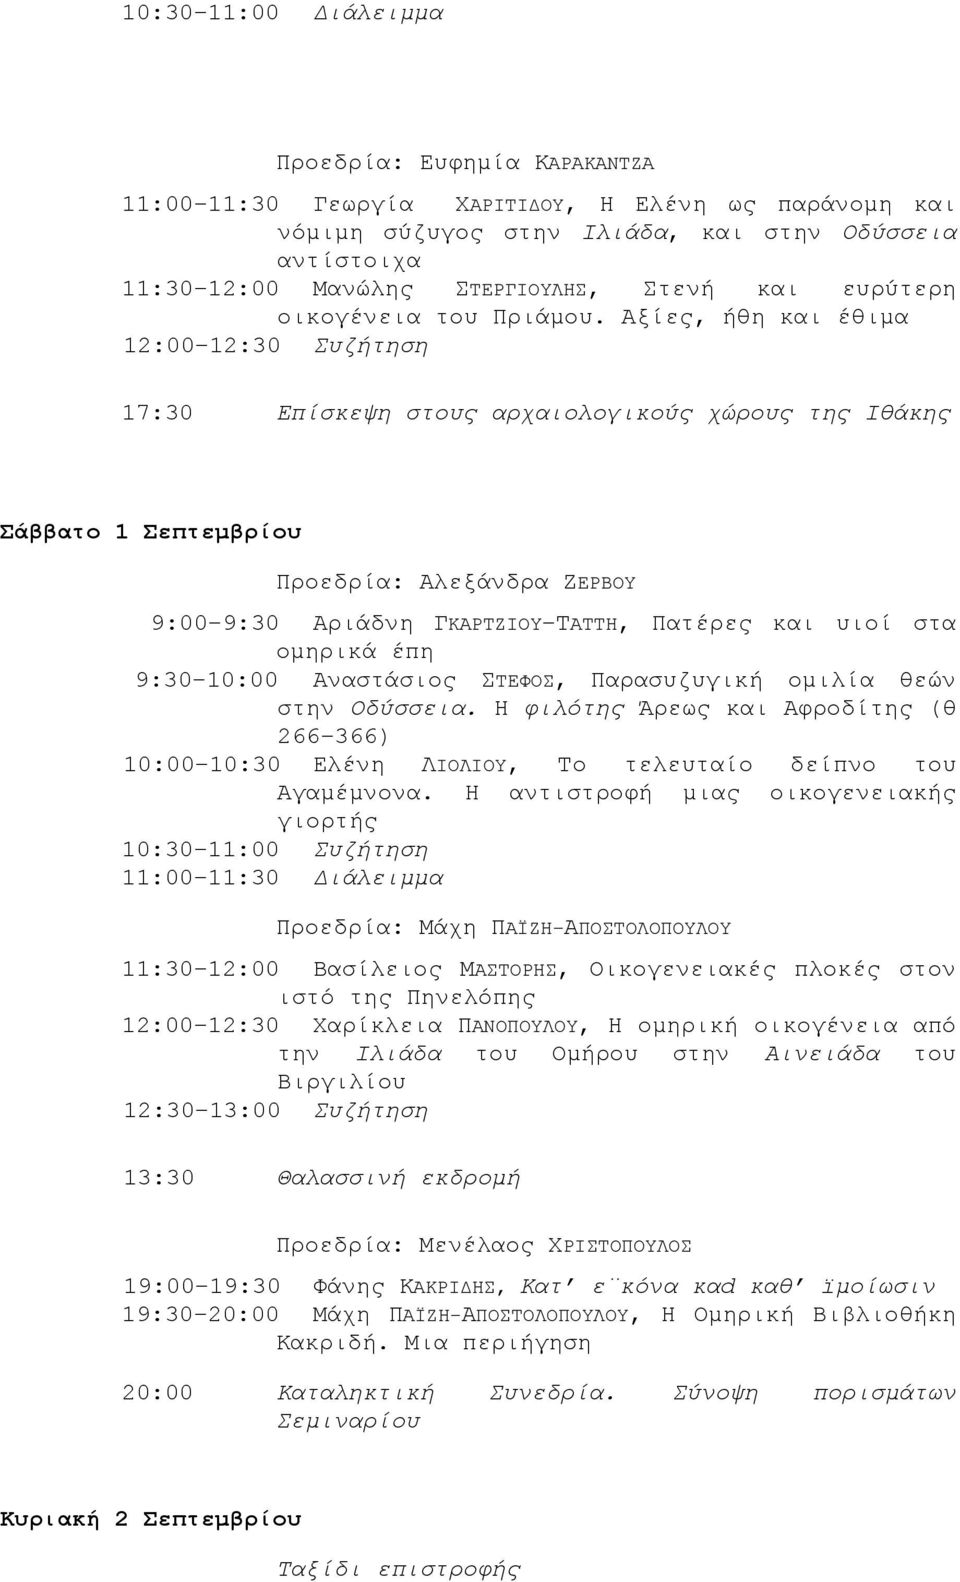 Αξίες, ήθη και έθιμα 12:00 12:30 Συζήτηση 17:30 Επίσκεψη στους αρχαιολογικούς χώρους της Ιθάκης Σάββατο 1 Σεπτεμβρίου Προεδρία: Αλεξάνδρα ΖΕΡΒΟΥ 9:00 9:30 Αριάδνη ΓΚΑΡΤΖΙΟΥ ΤΑΤΤΗ, Πατέρες και υιοί